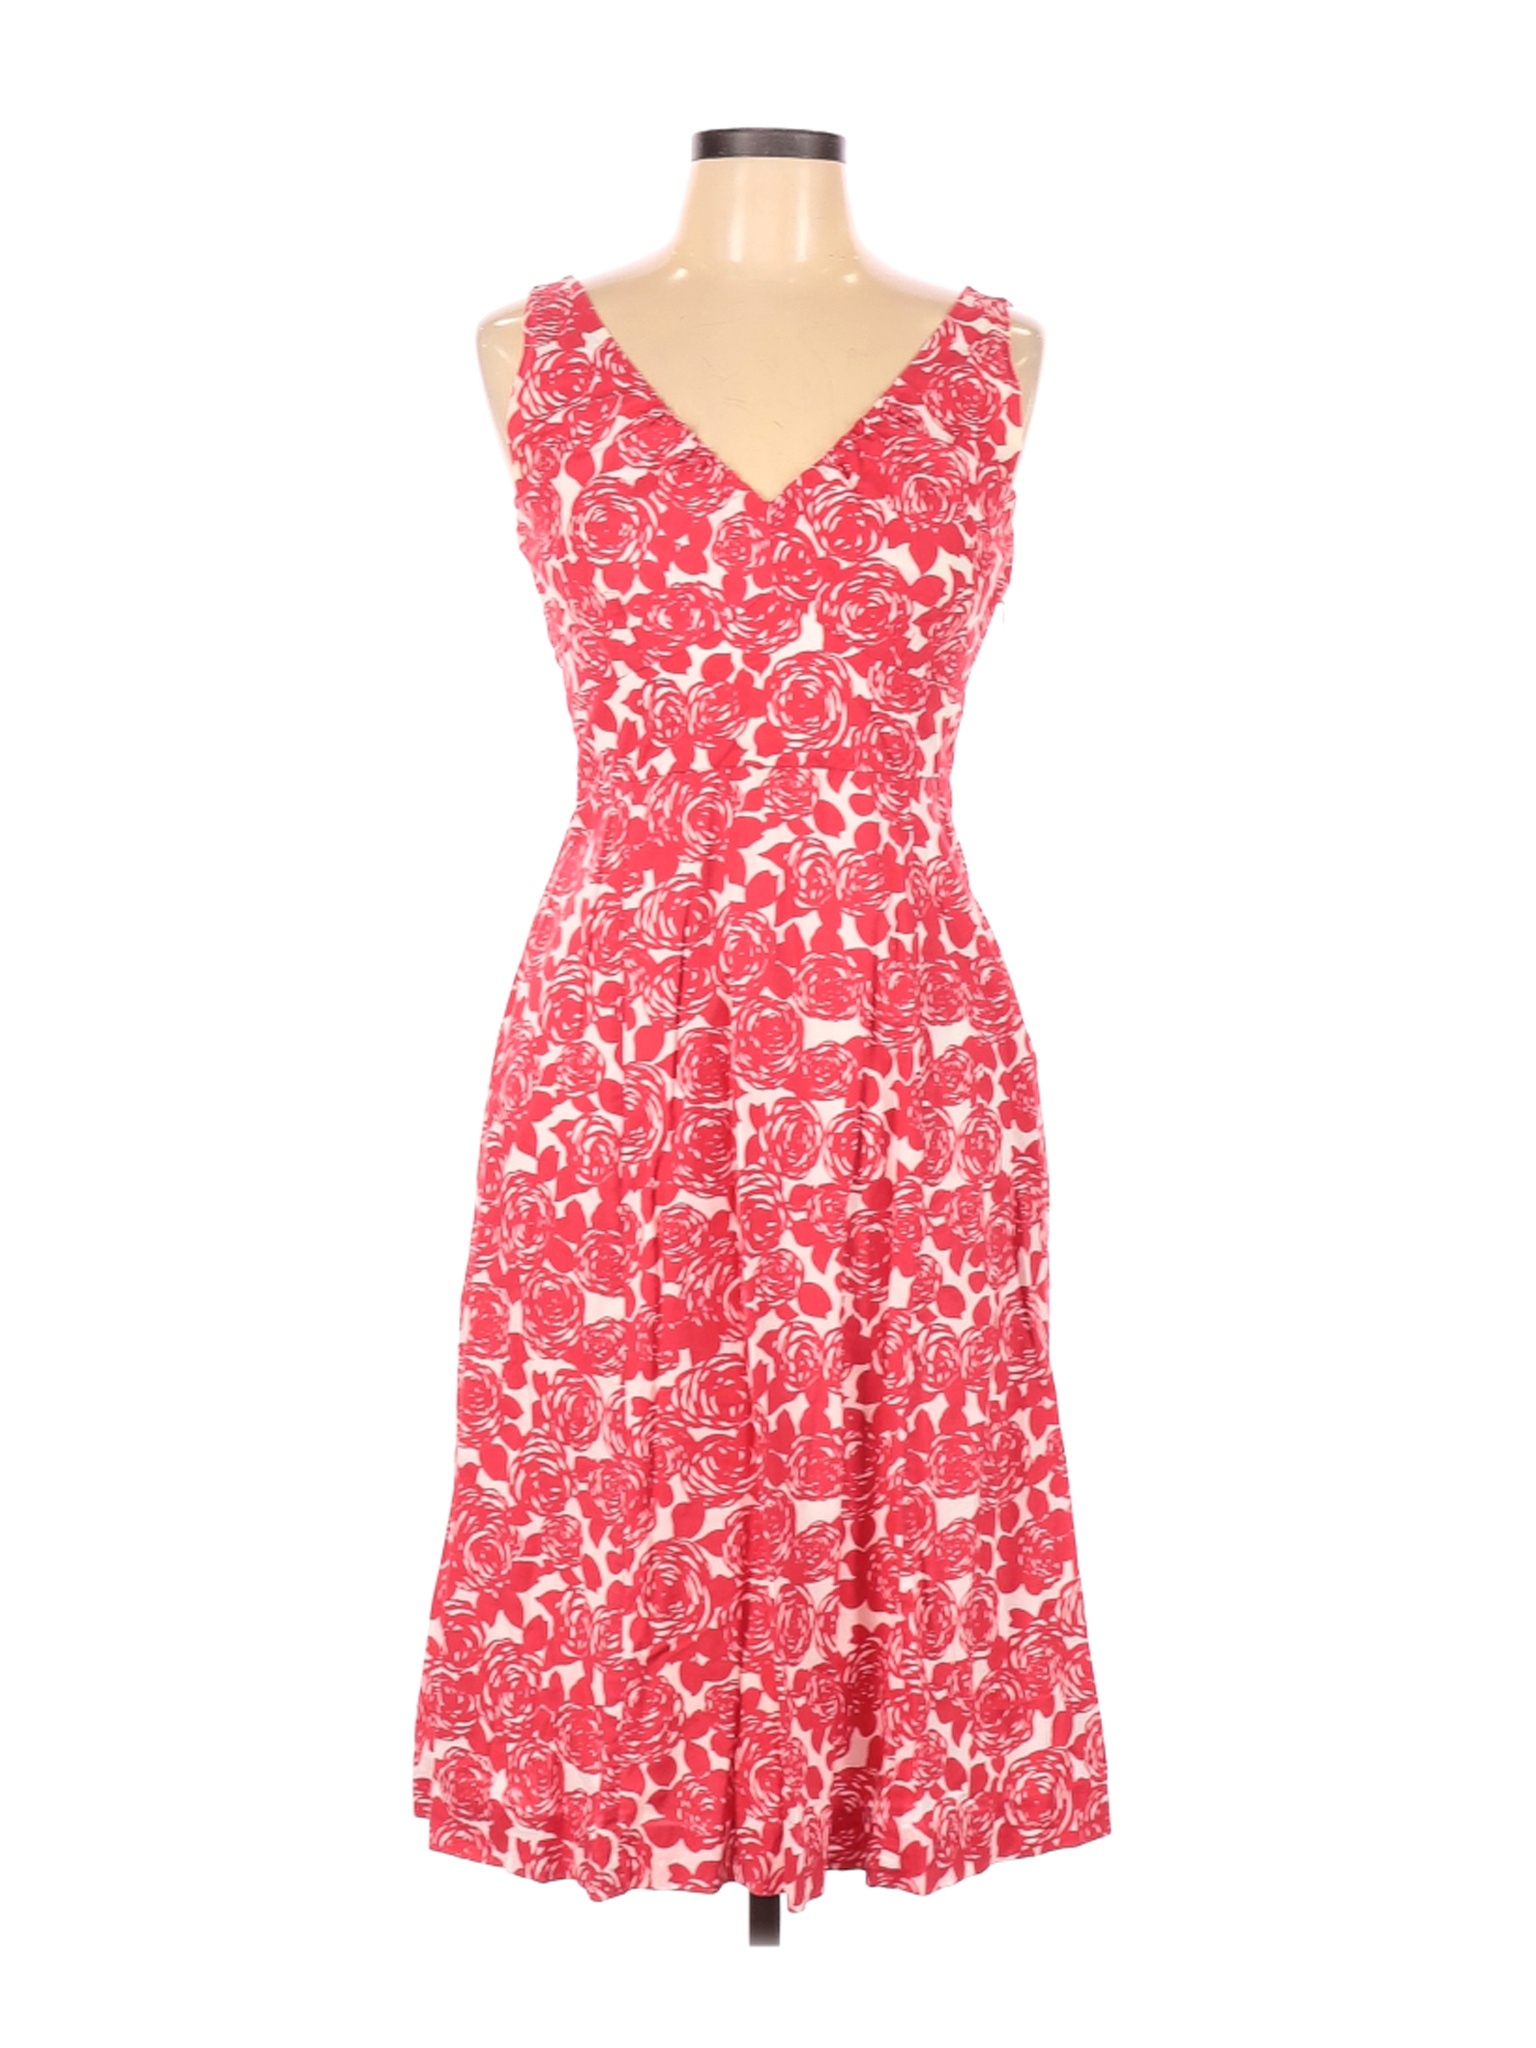 Boden Women Pink Casual Dress 10 | eBay